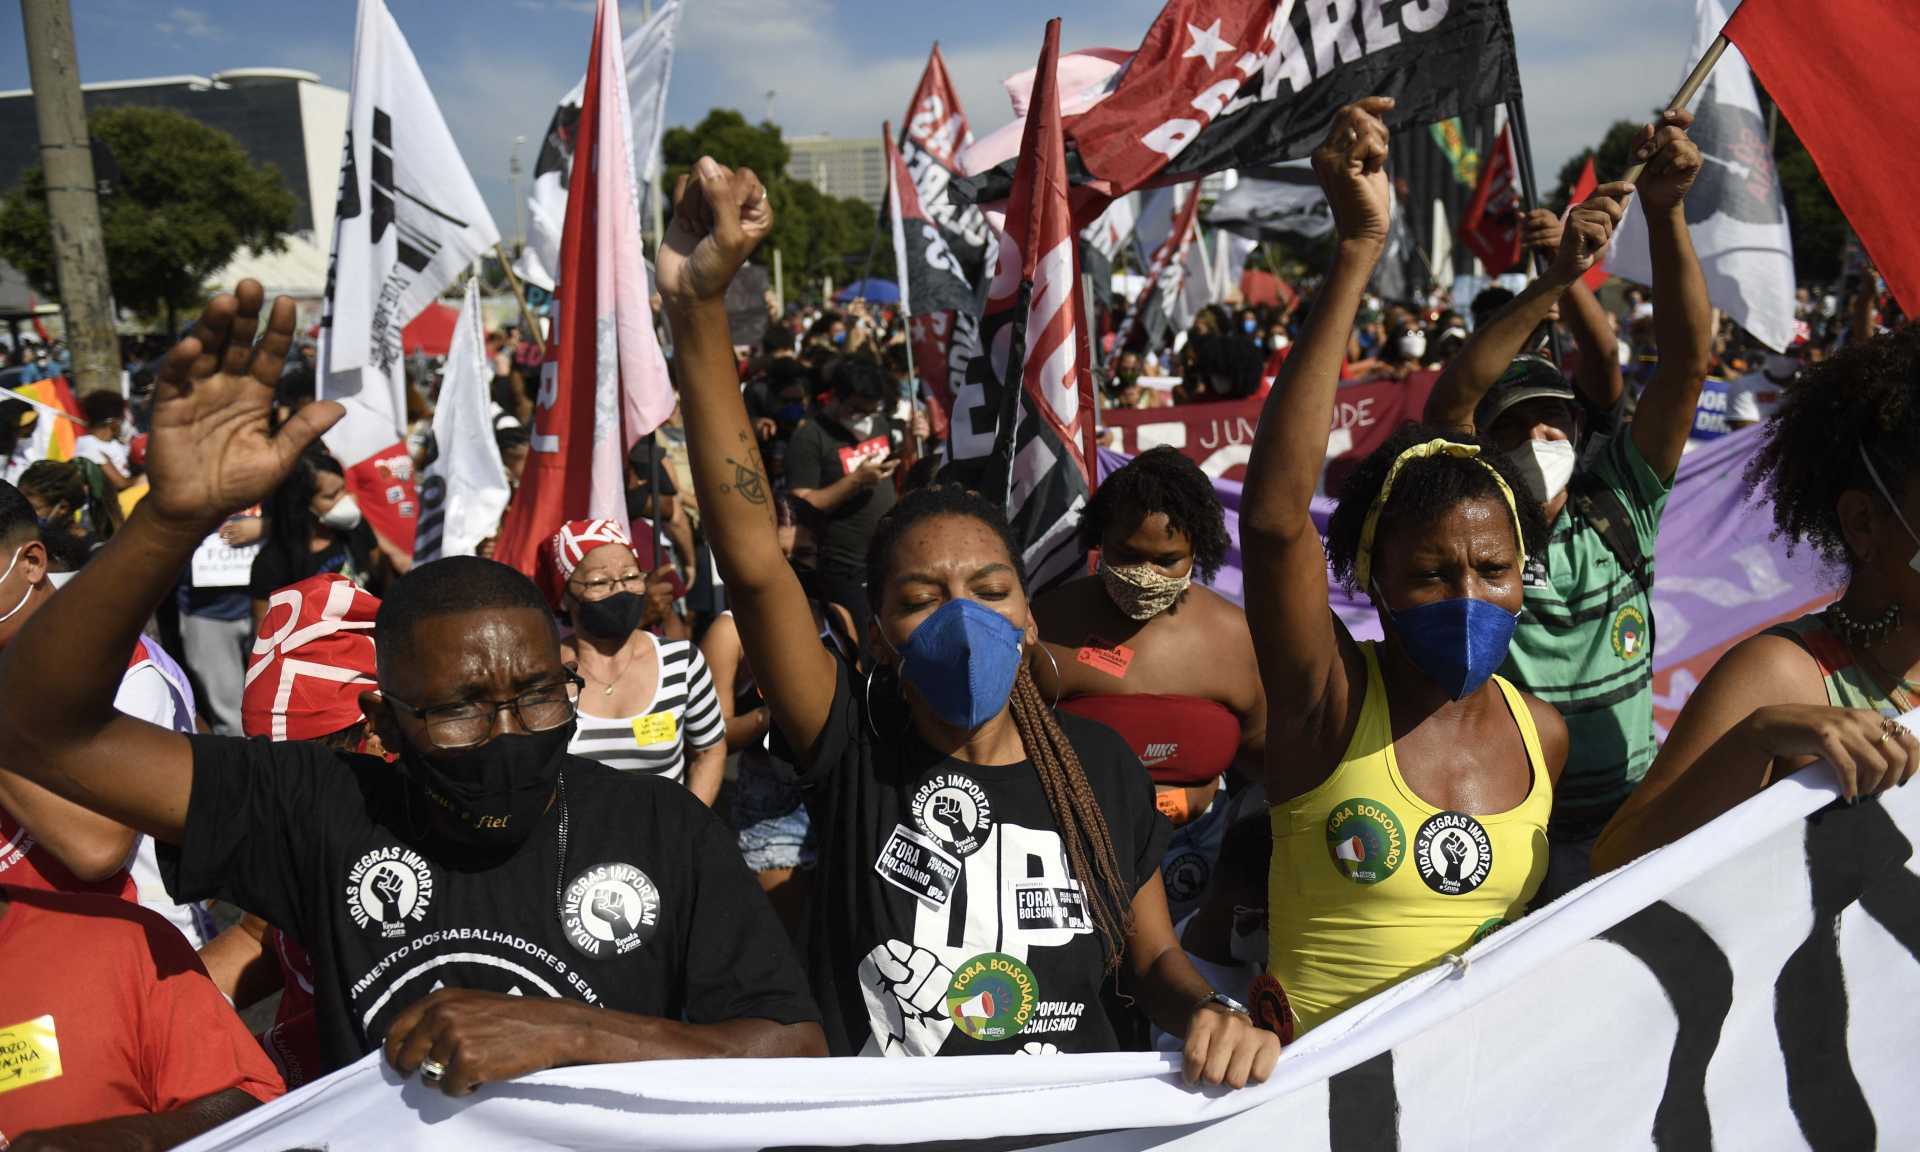 Manifestantes interditam principal via do centro do Rio em ato contra Bolsonaro - MAURO PIMENTEL / AFP

